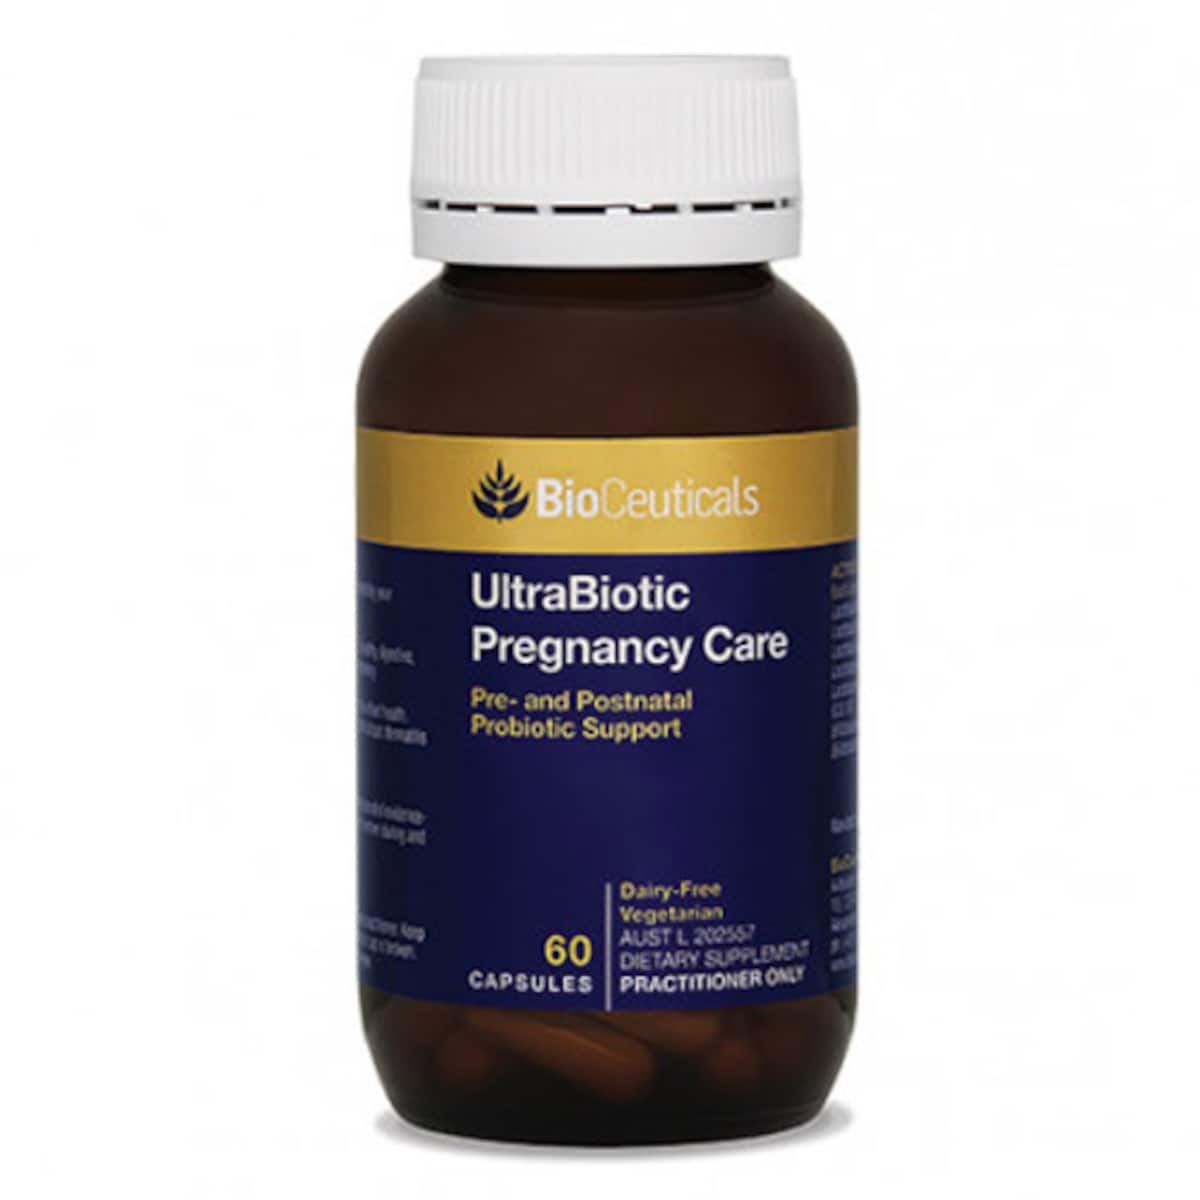 BioCeuticals UltraBiotic Pregnancy Care 60 Capsules